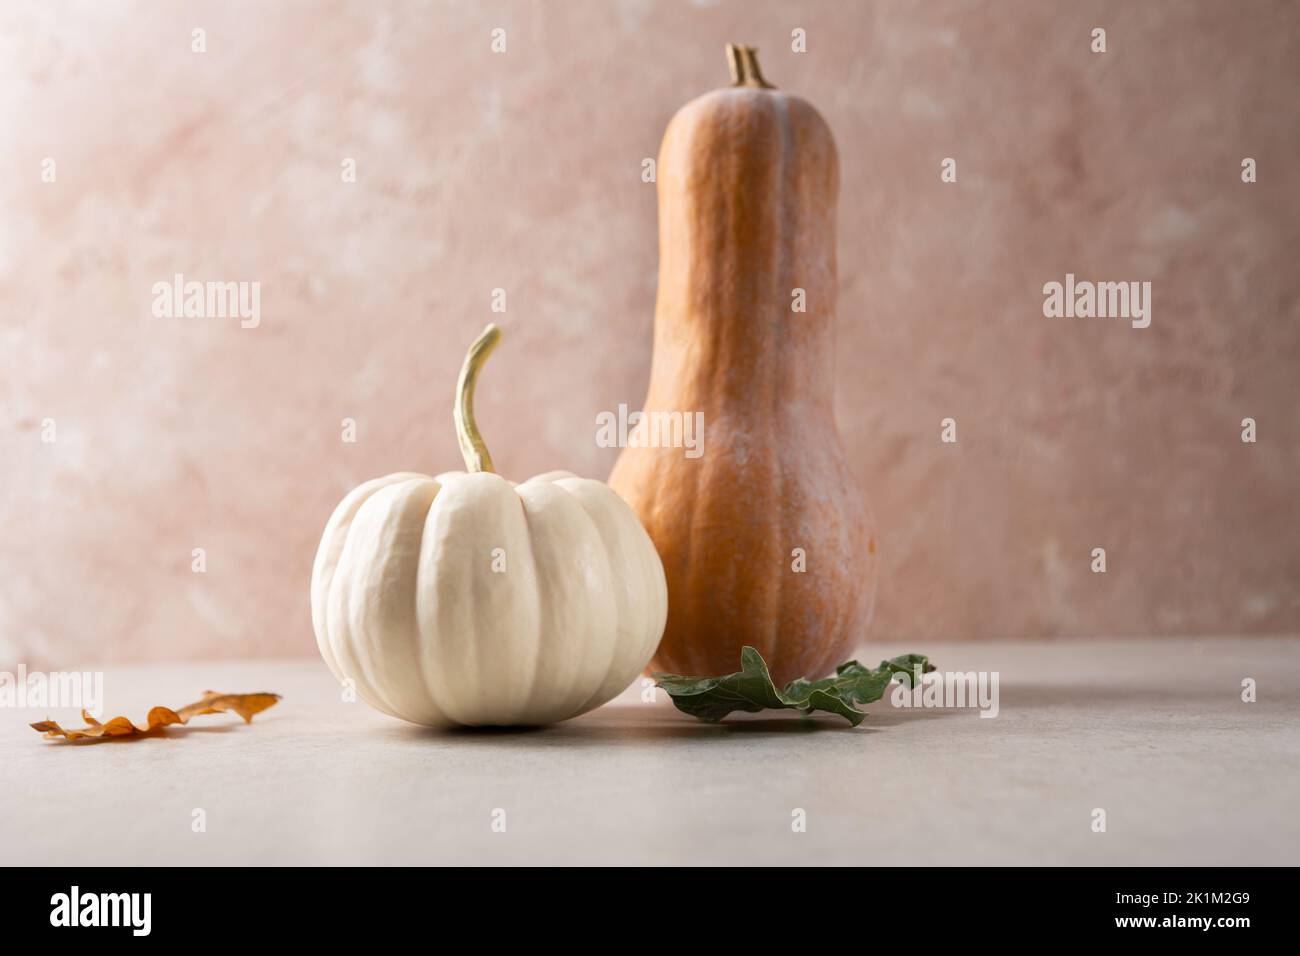 Two orange and white pumpkins autumn background Stock Photo